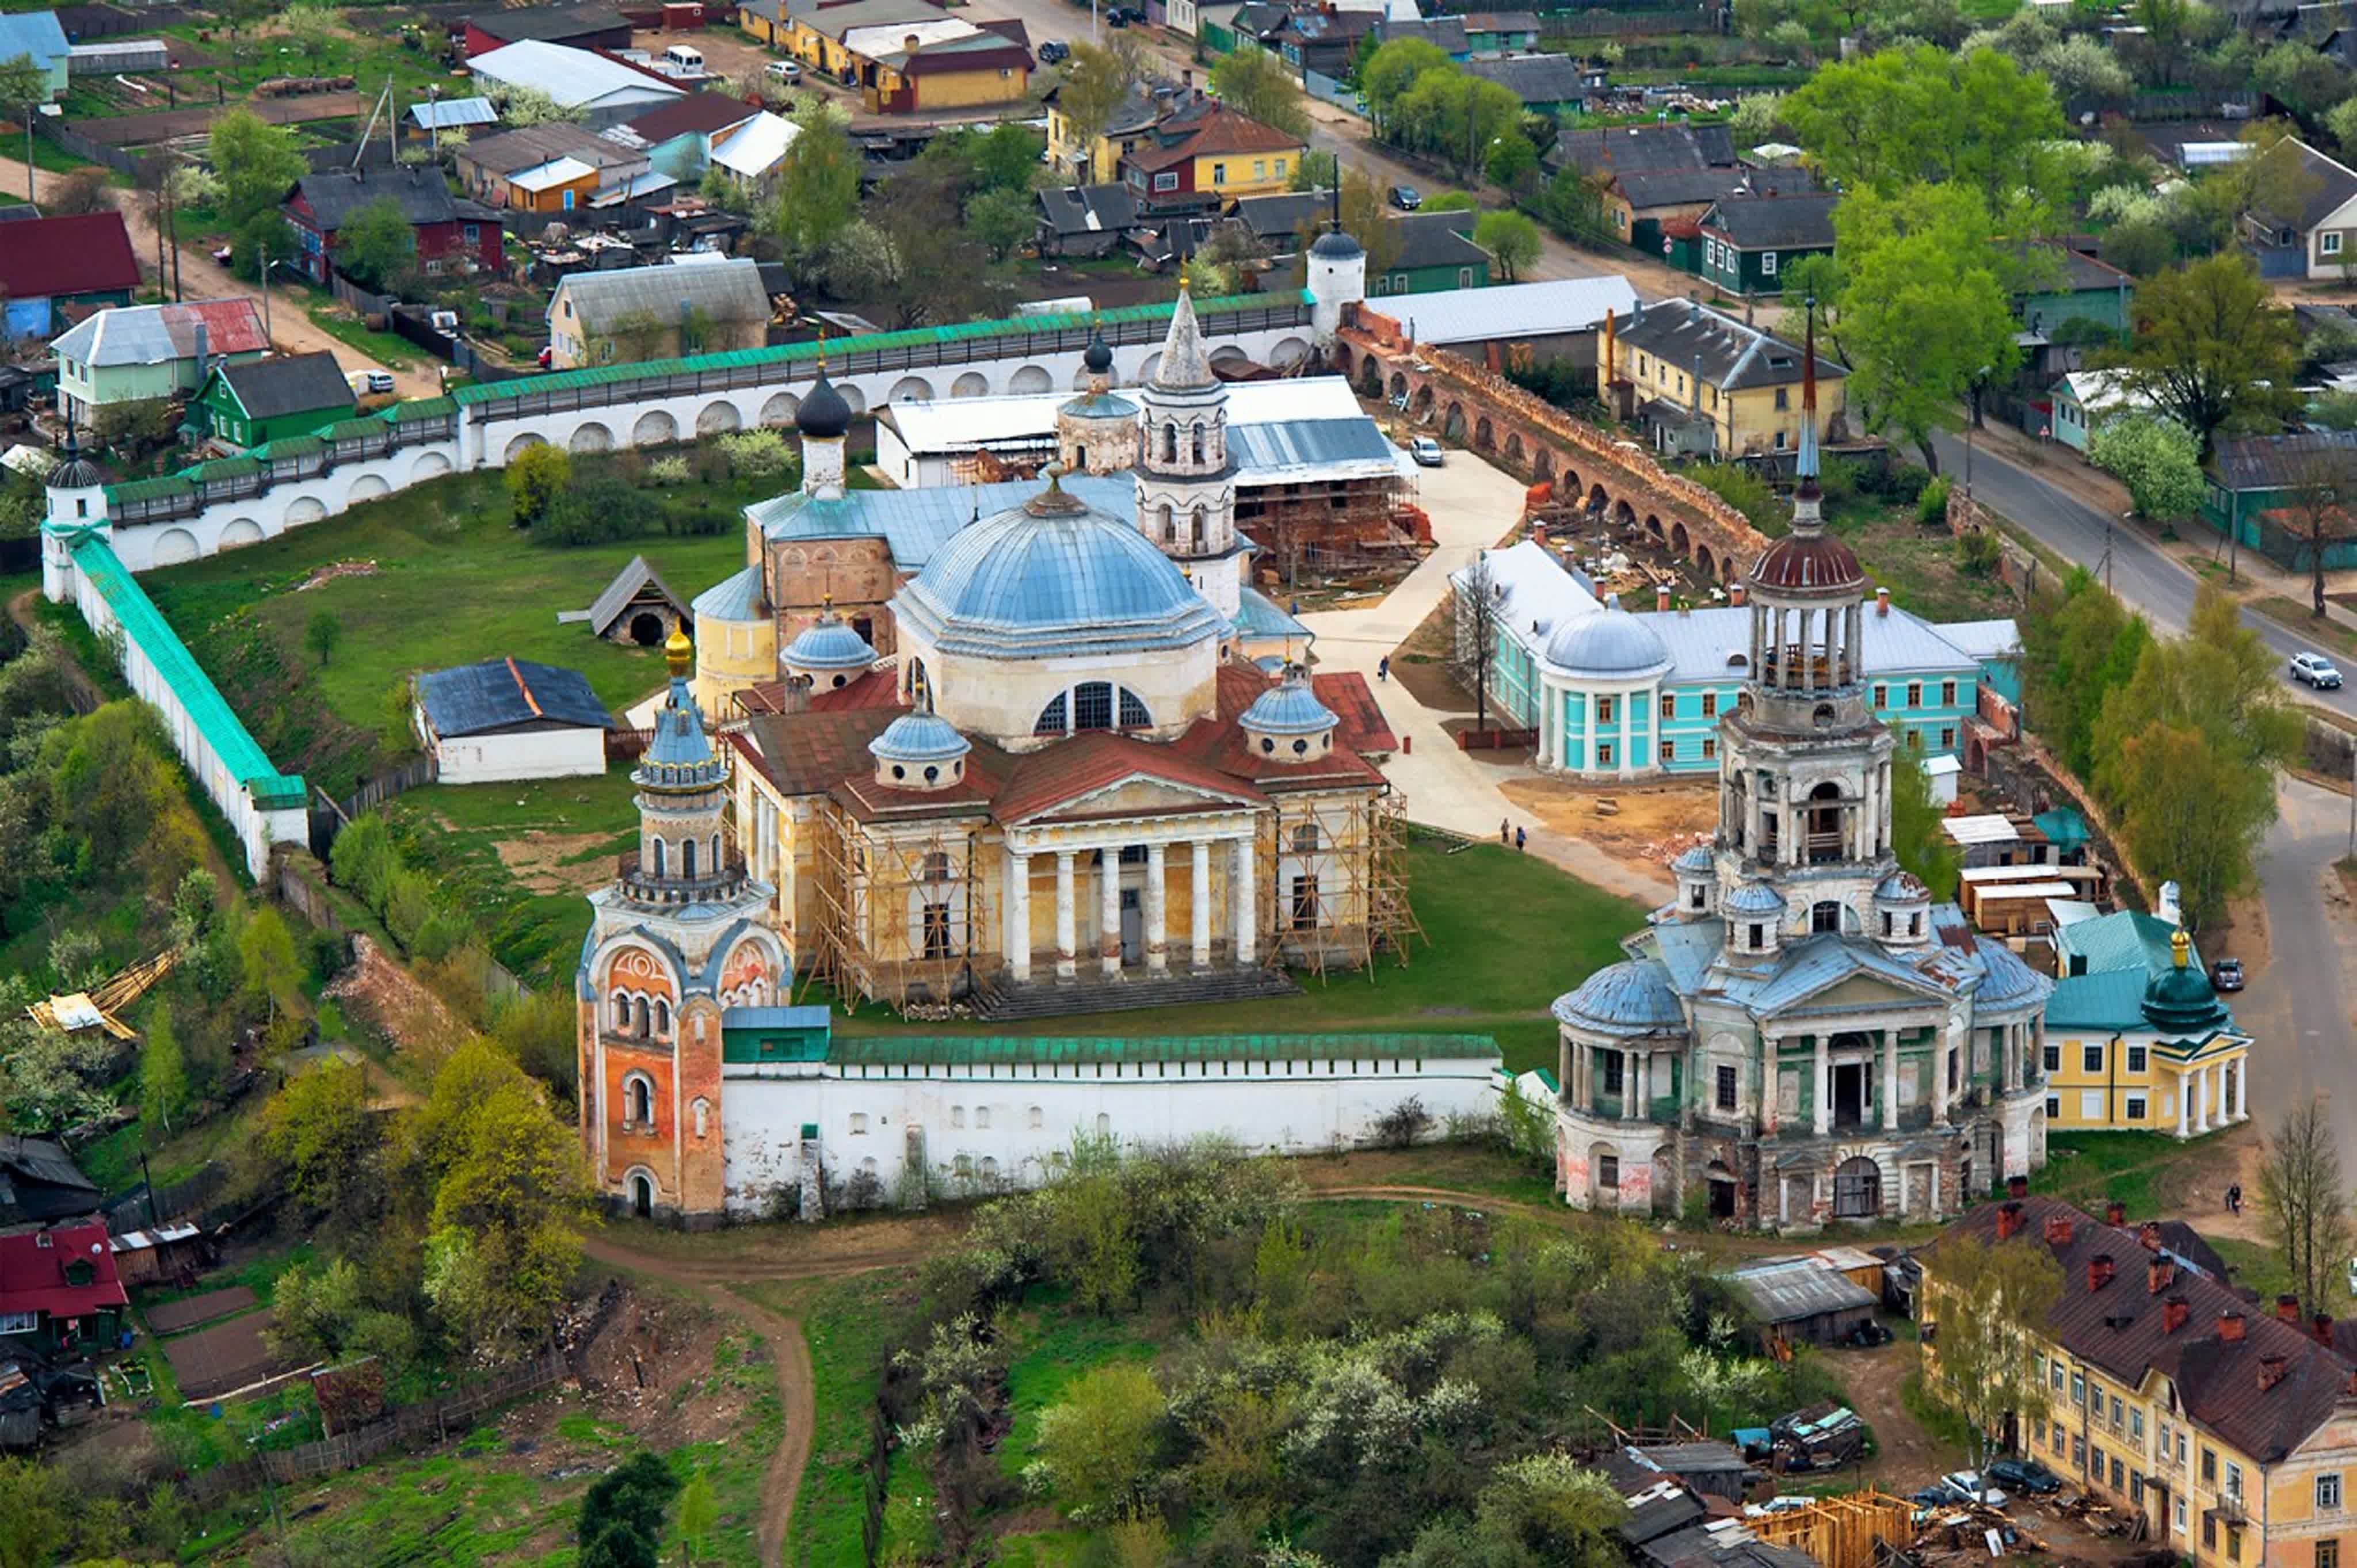 Новоторжский борисоглебский мужской монастырь